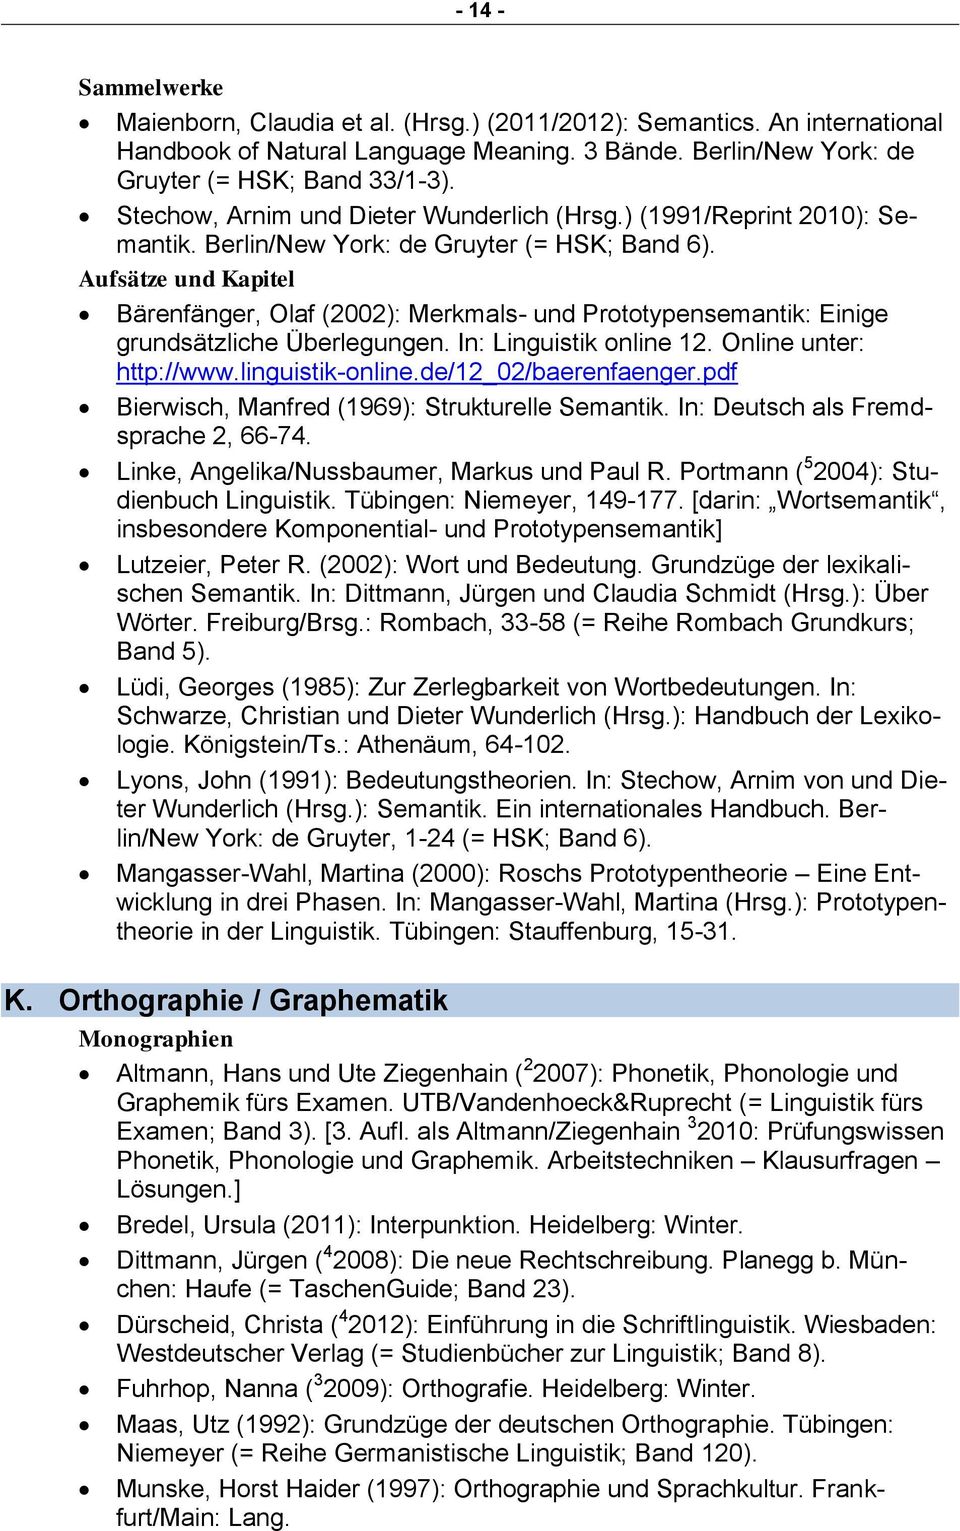 Bärenfänger, Olaf (2002): Merkmals- und Prototypensemantik: Einige grundsätzliche Überlegungen. In: Linguistik online 12. Online unter: http://www.linguistik-online.de/12_02/baerenfaenger.